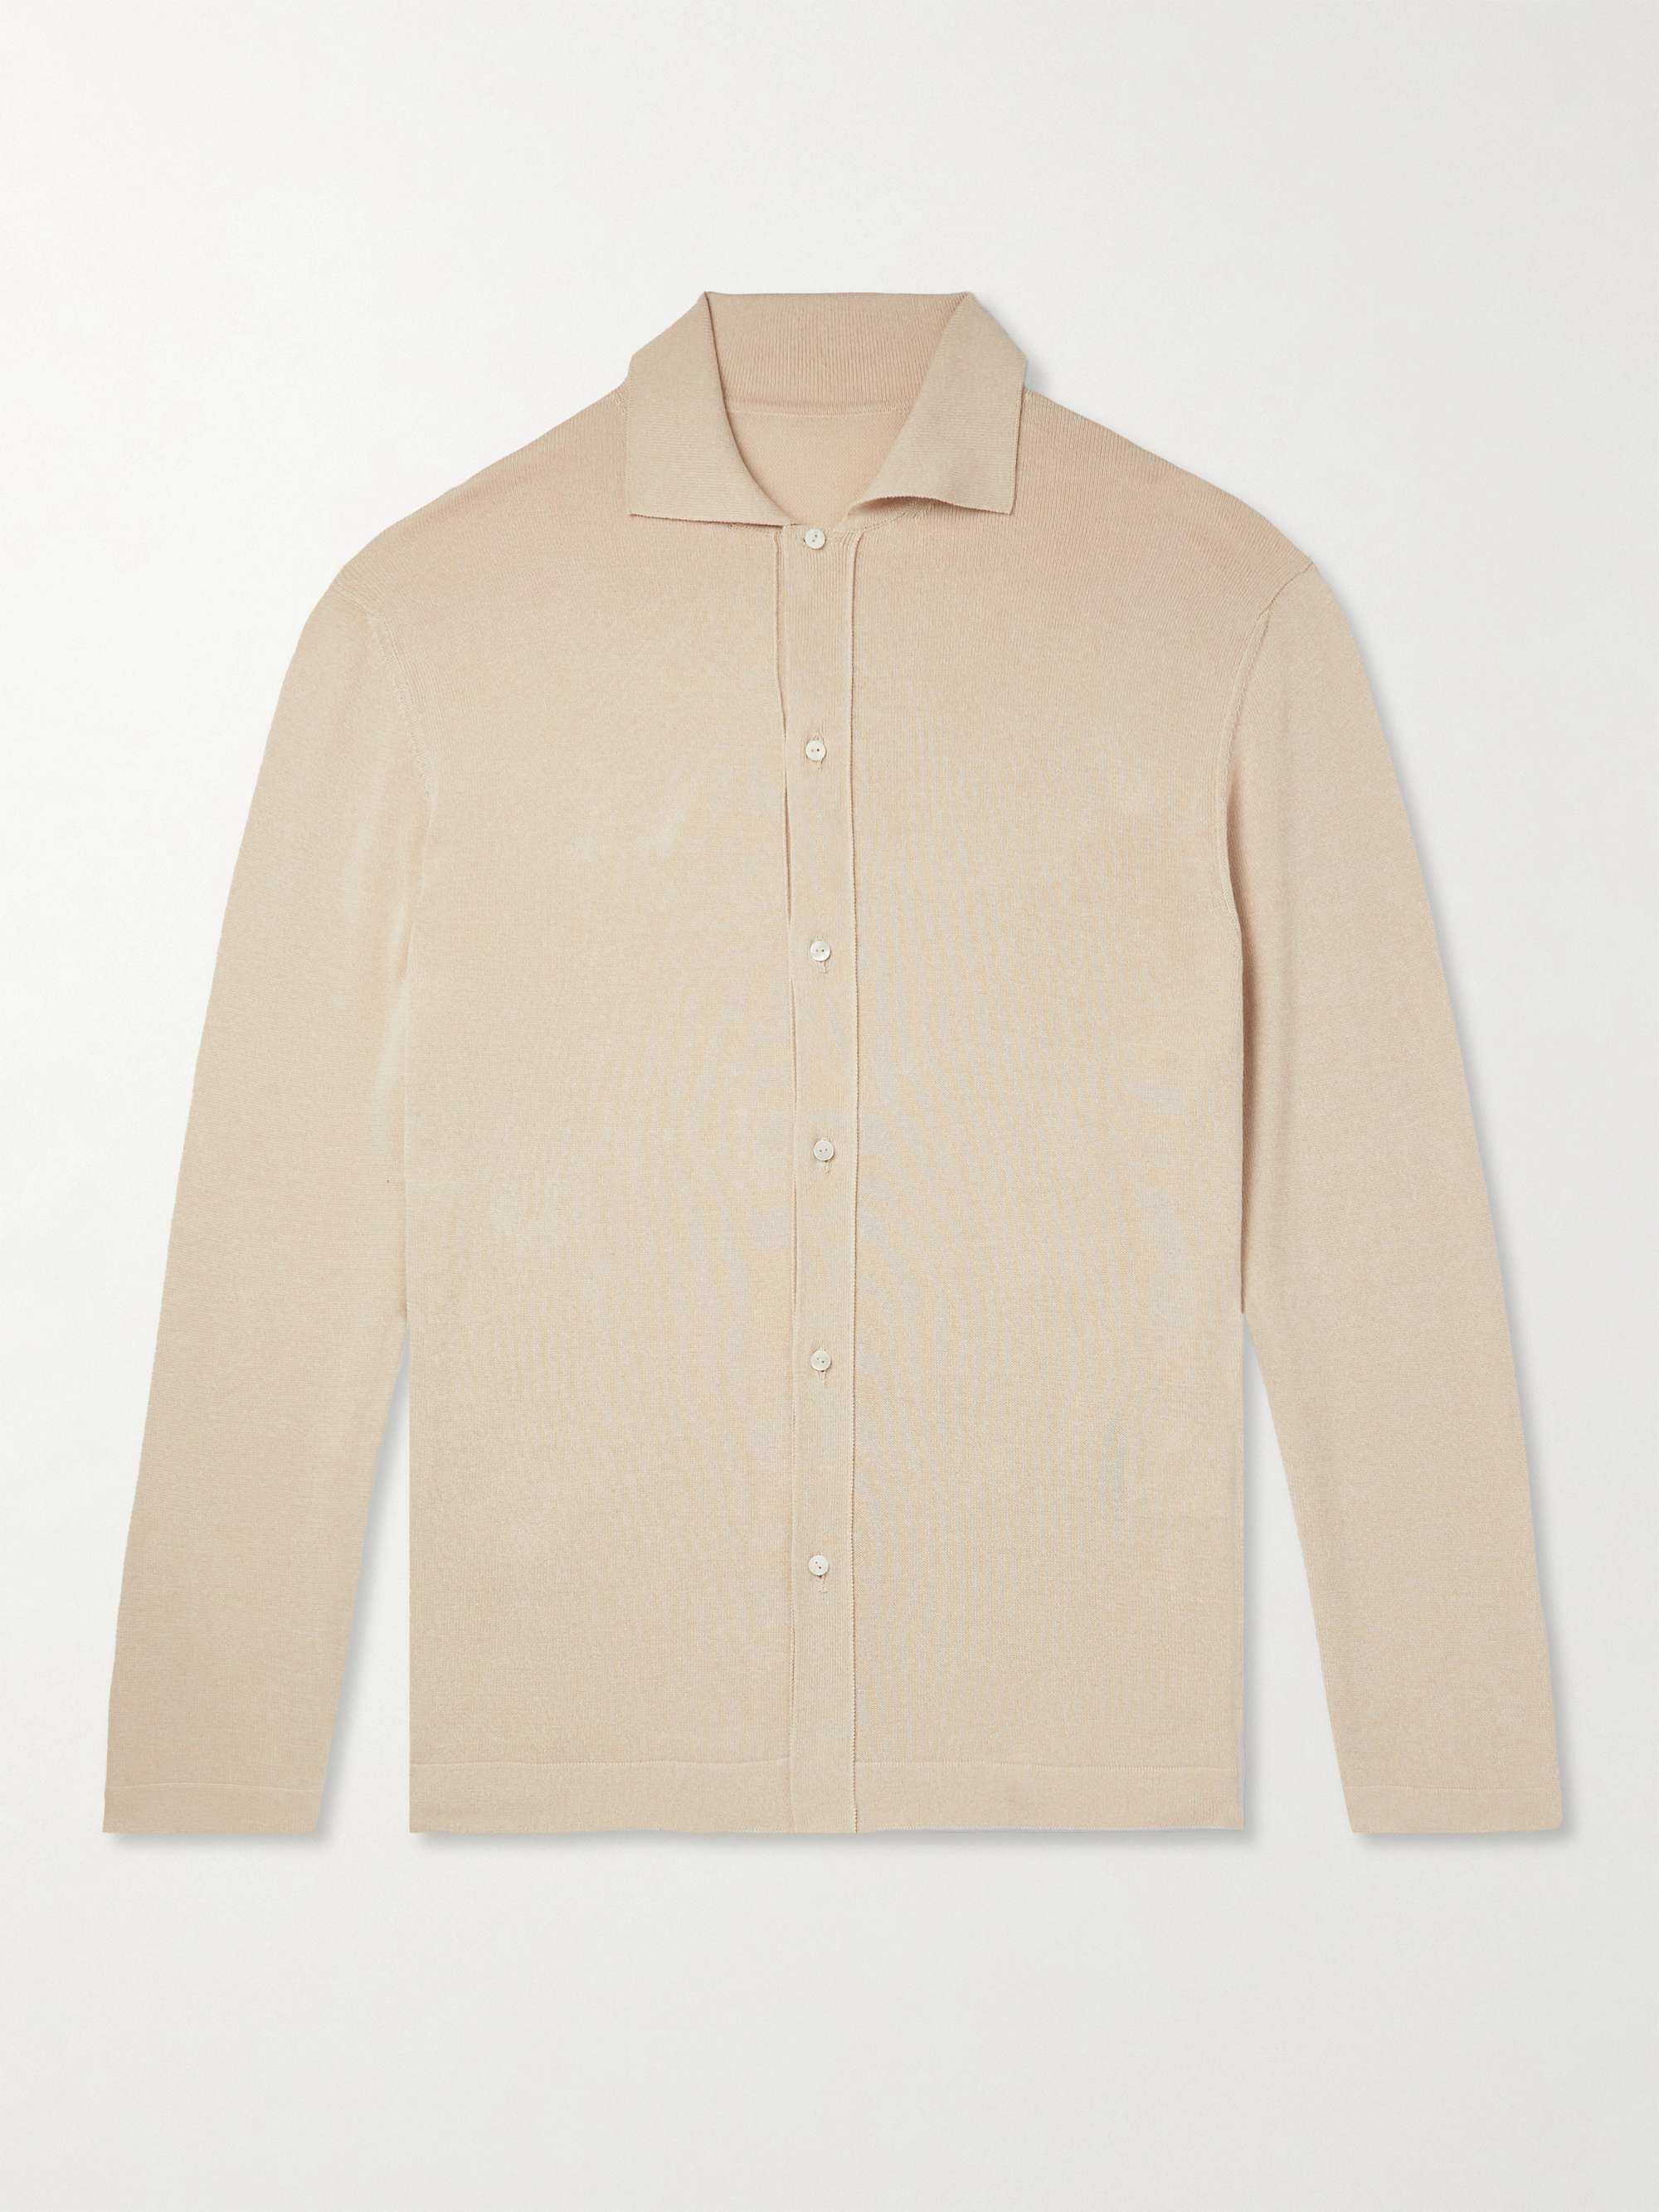 Sand Slim-Fit Mouliné-Cotton Shirt | STÒFFA | MR PORTER